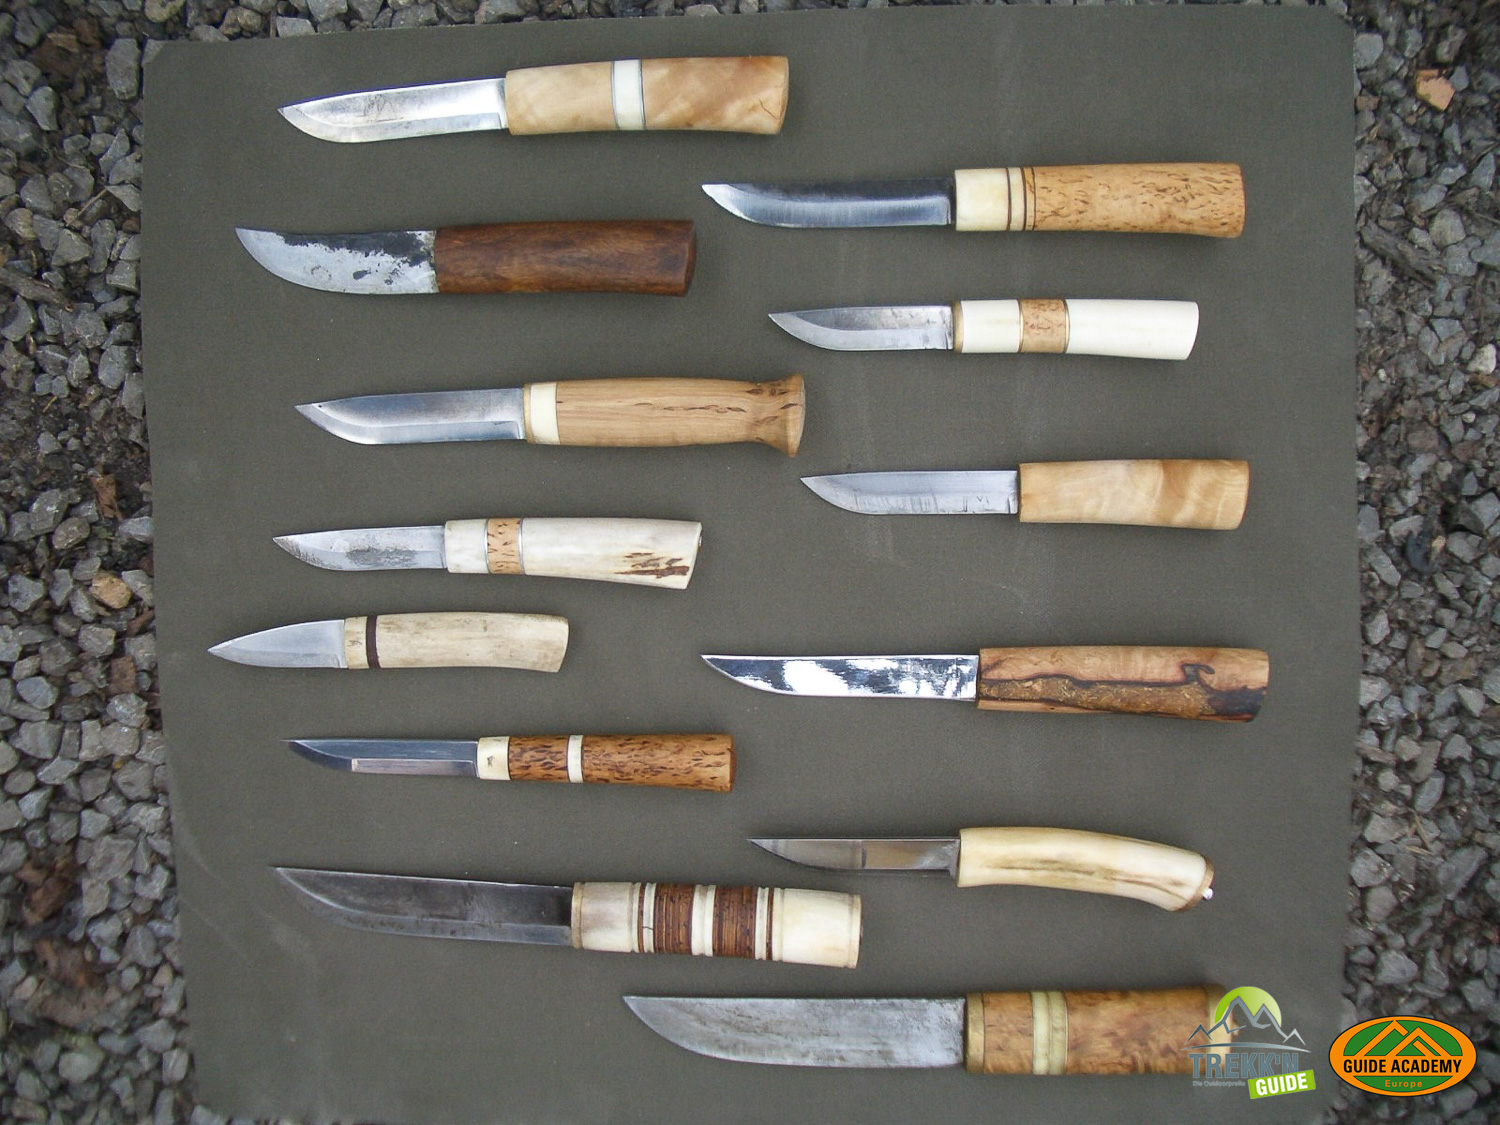 Outdoormesser nach samischem Vorbild aus dem Messerbaukurs bei Trekk'n Guide